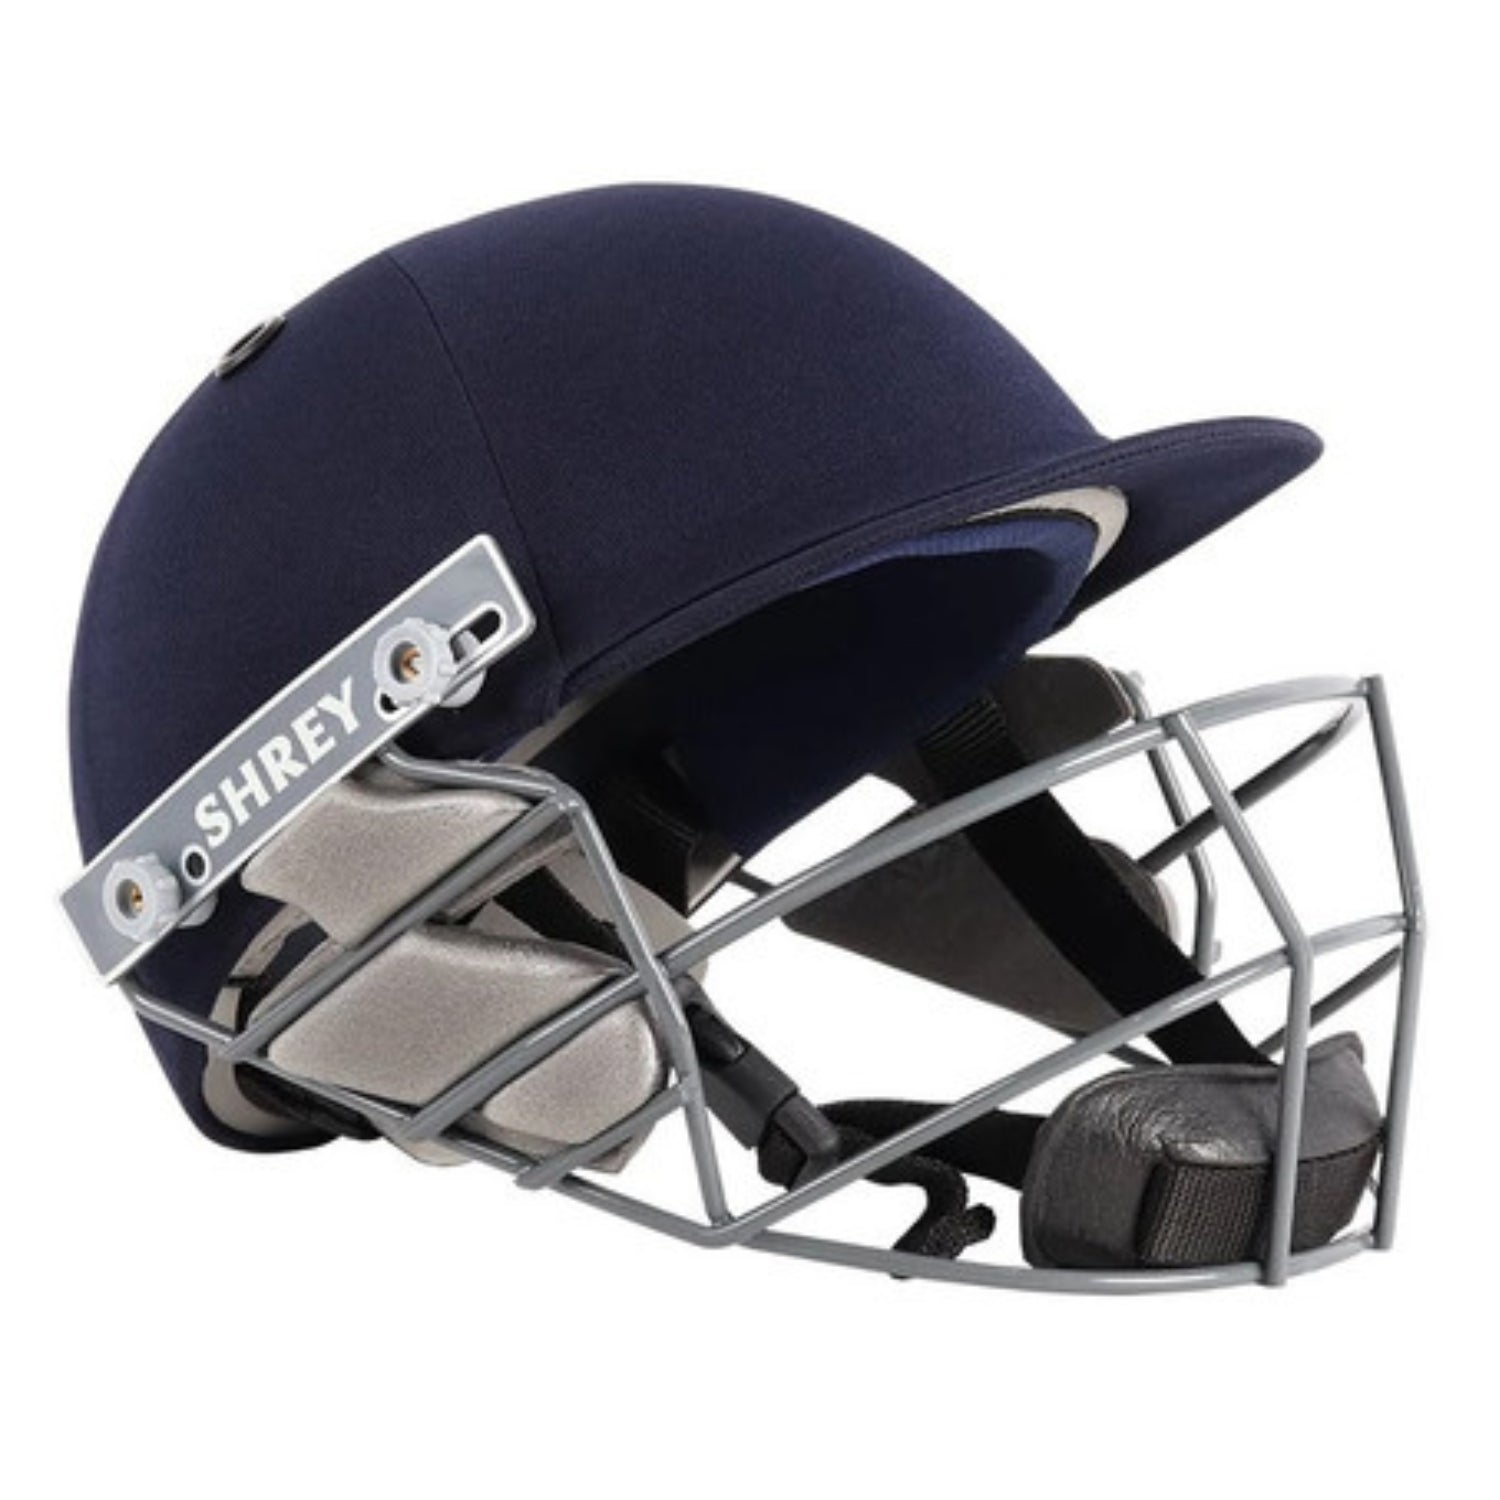 Shrey Batting Helmet, Model Star Junior, Navy Blue, S, M, L, XL